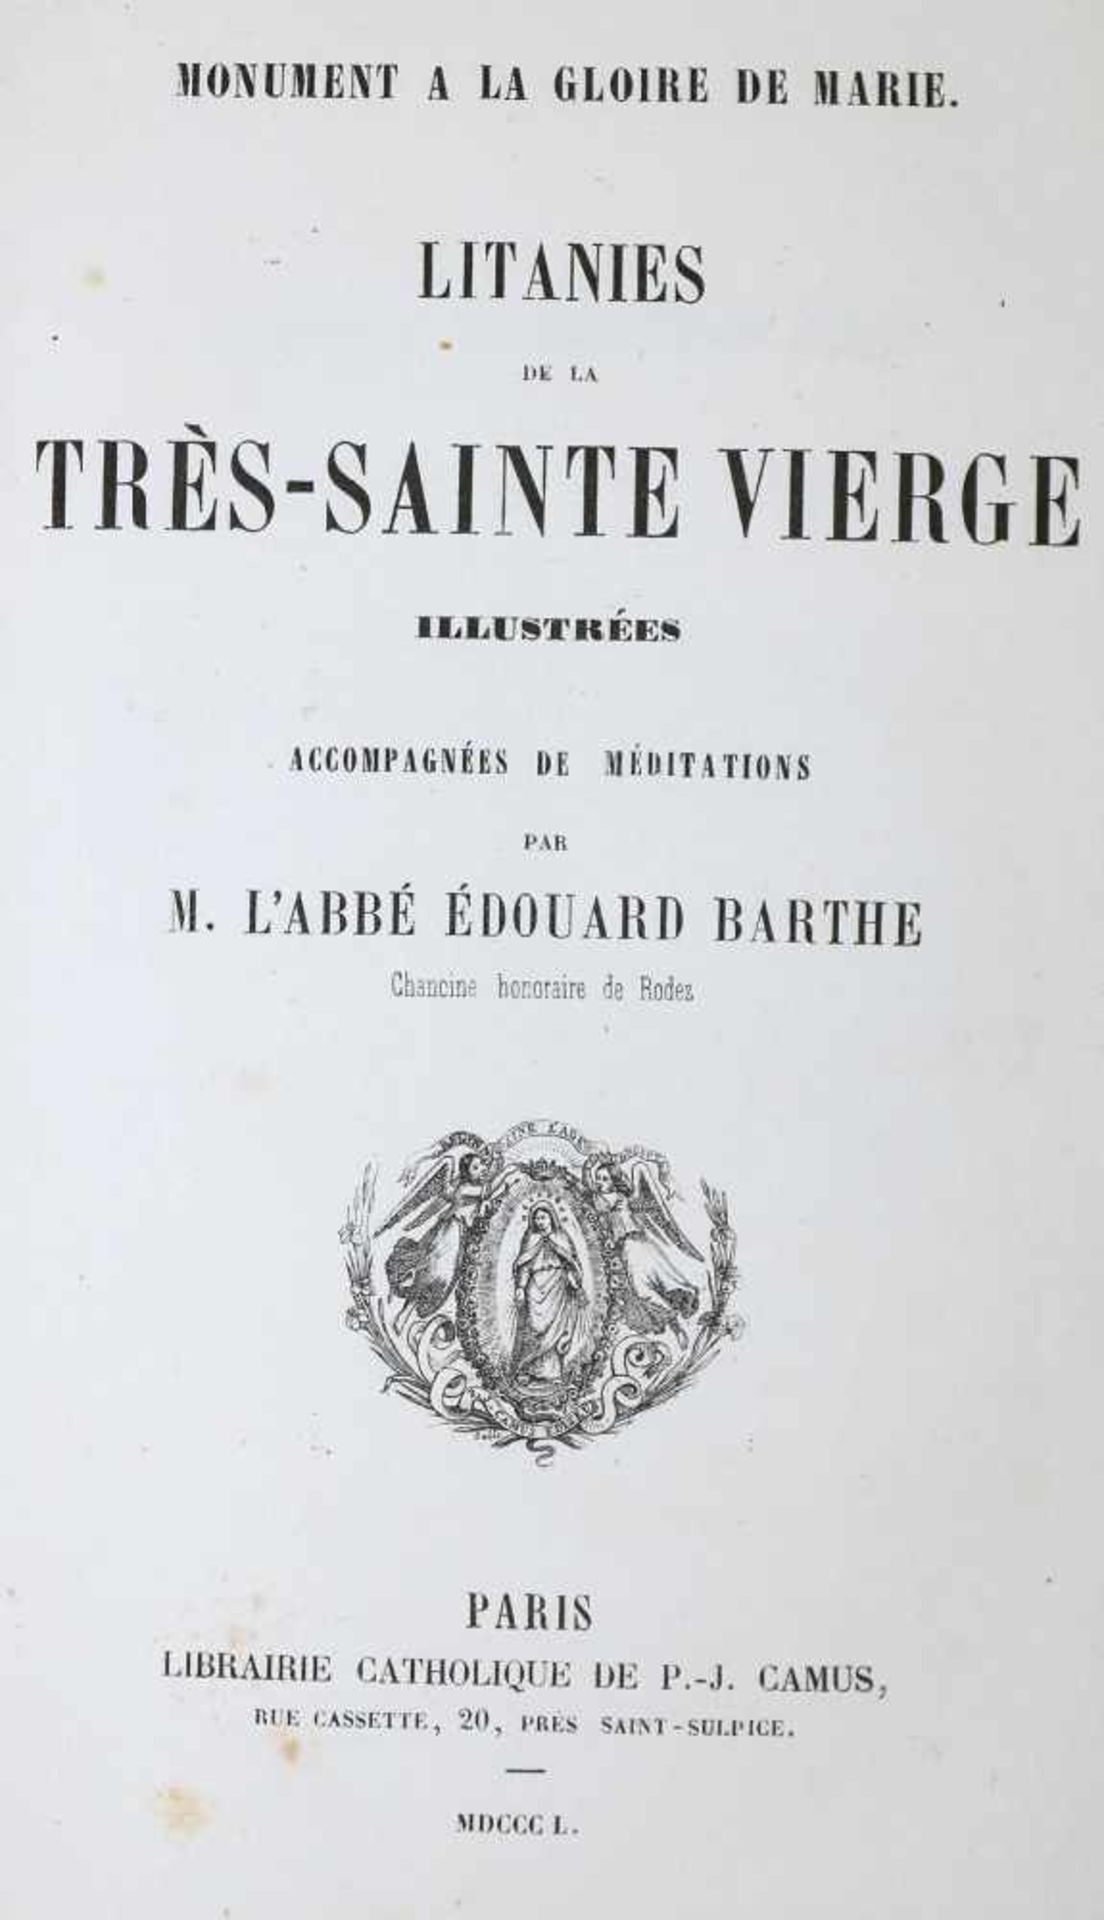 Barthe,E.Monument a la glorie de Marie. Litanies de la tres-sainte Vierge illustrees accompagnees de